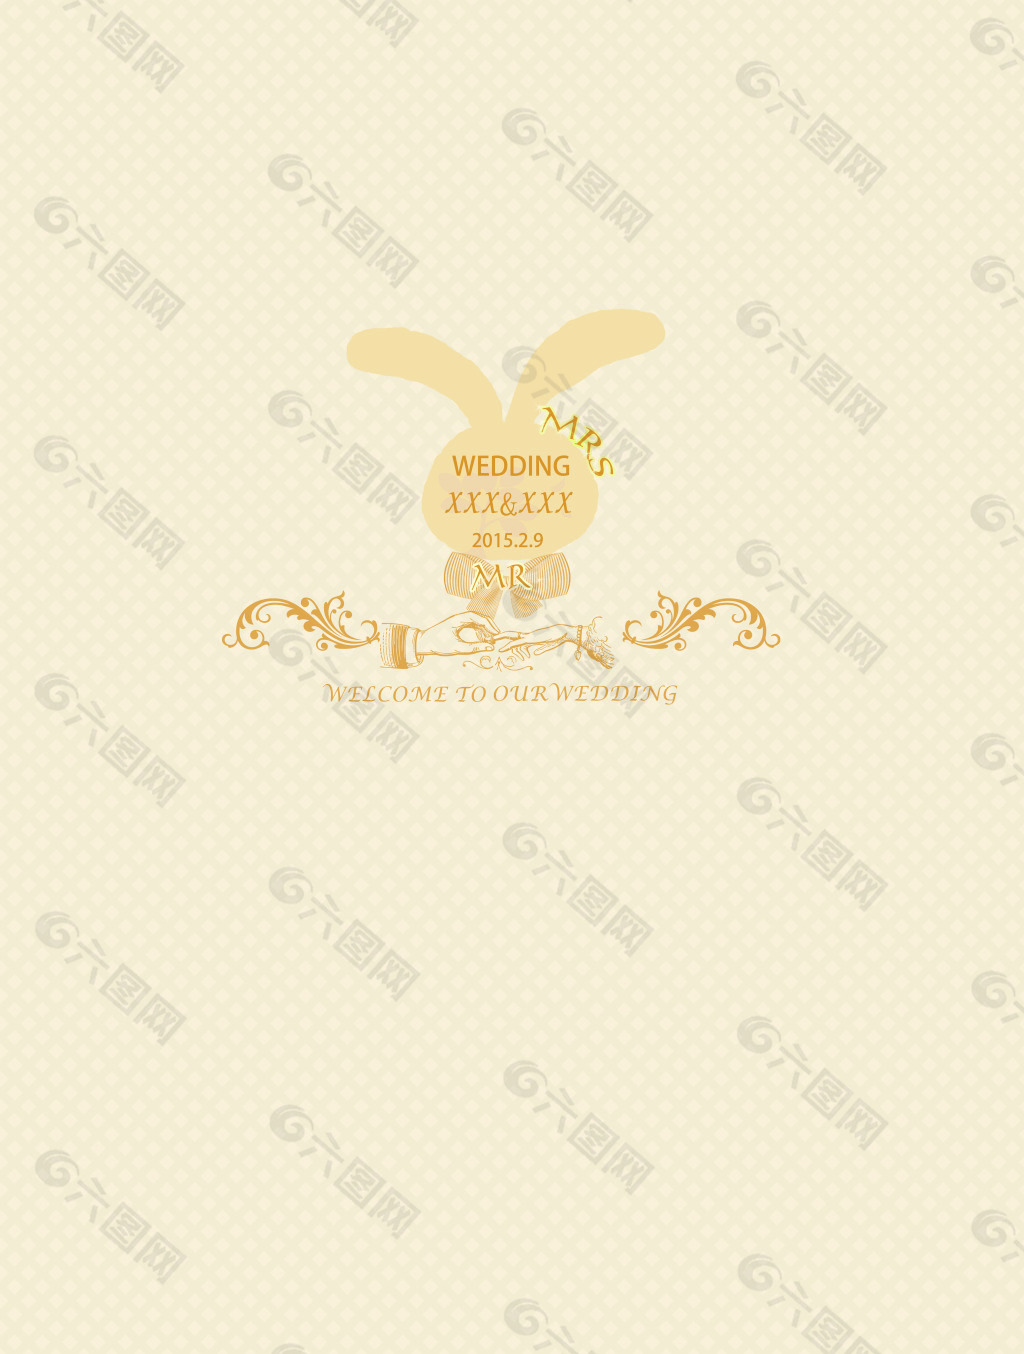 婚礼logo 主题婚礼 婚礼设计